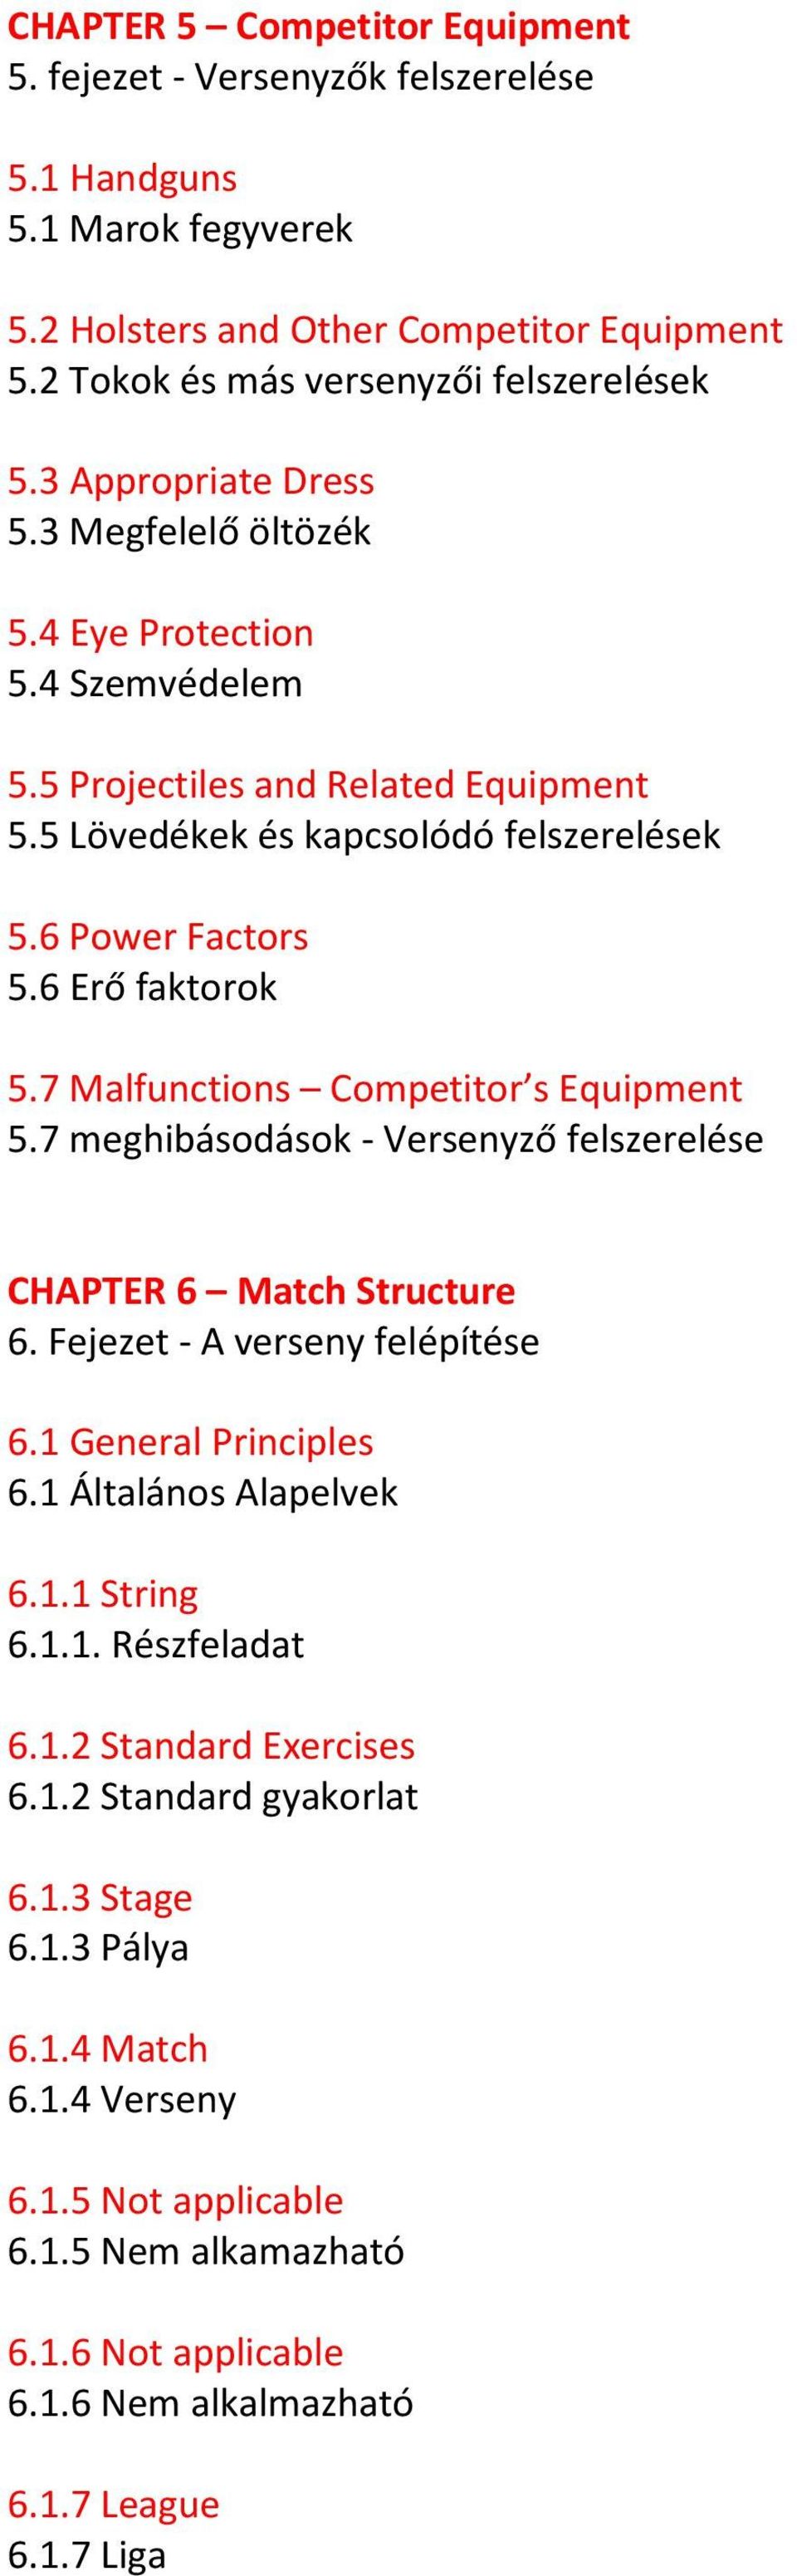 7 Malfunctions Competitor s Equipment 5.7 meghibásodások - Versenyző felszerelése CHAPTER 6 Match Structure 6. Fejezet - A verseny felépítése 6.1 General Principles 6.1 Általános Alapelvek 6.1.1 String 6.